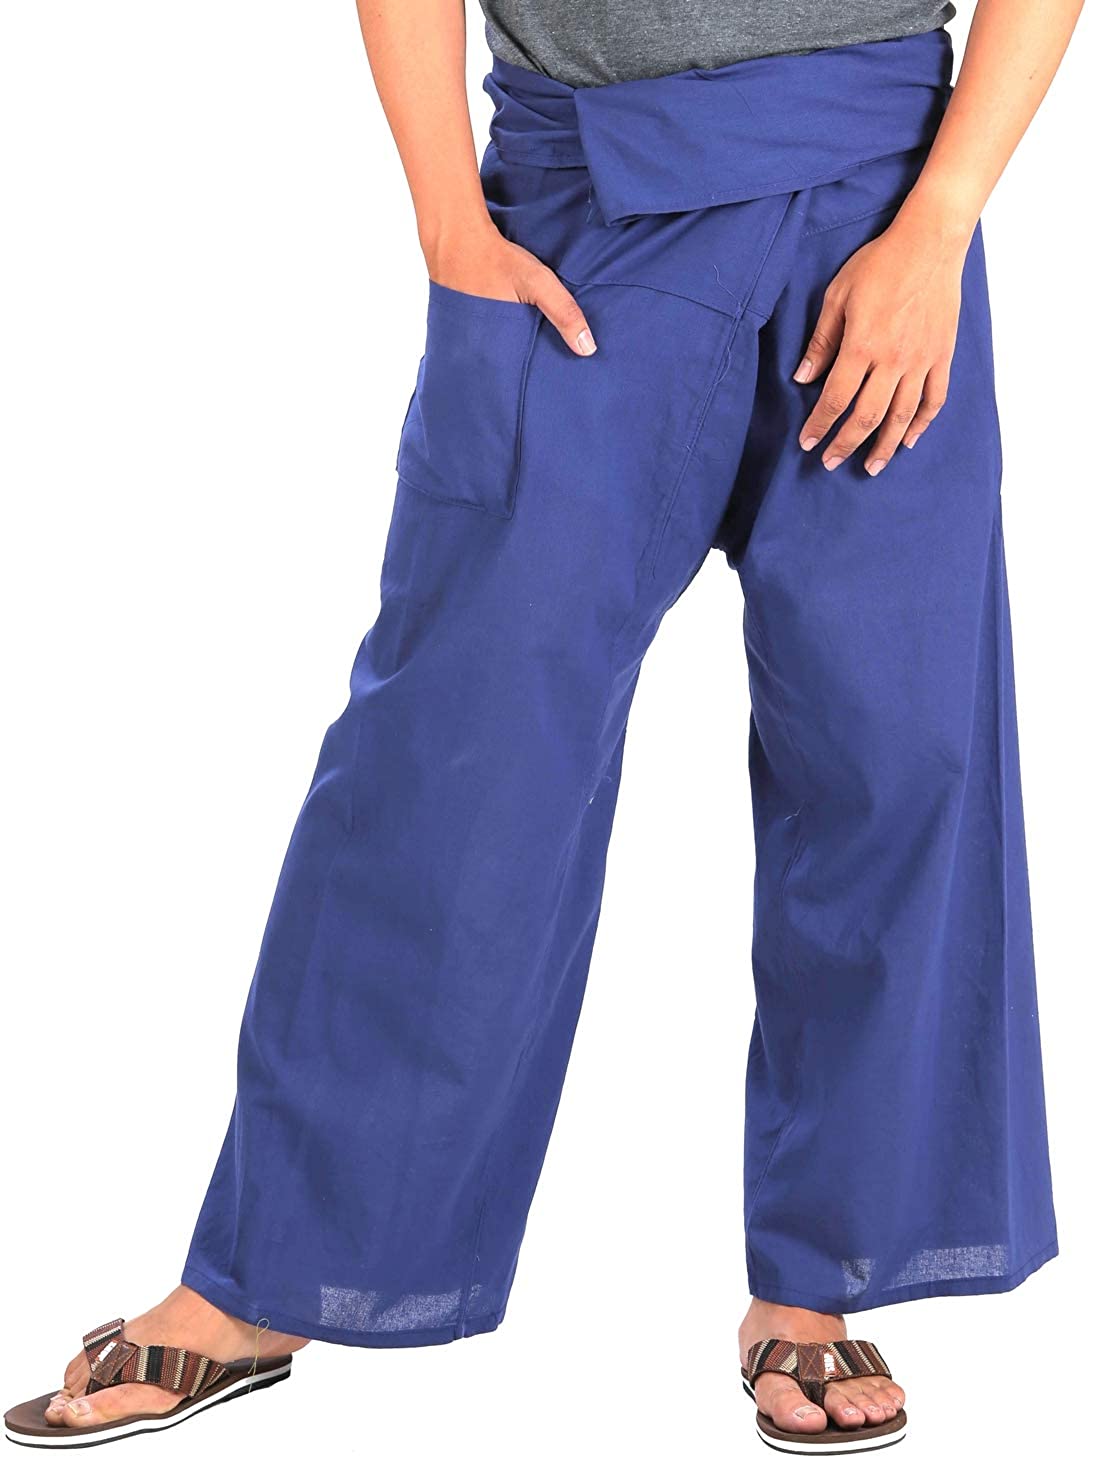 Royal Blue Long Cotton Fisherman Pants for Men